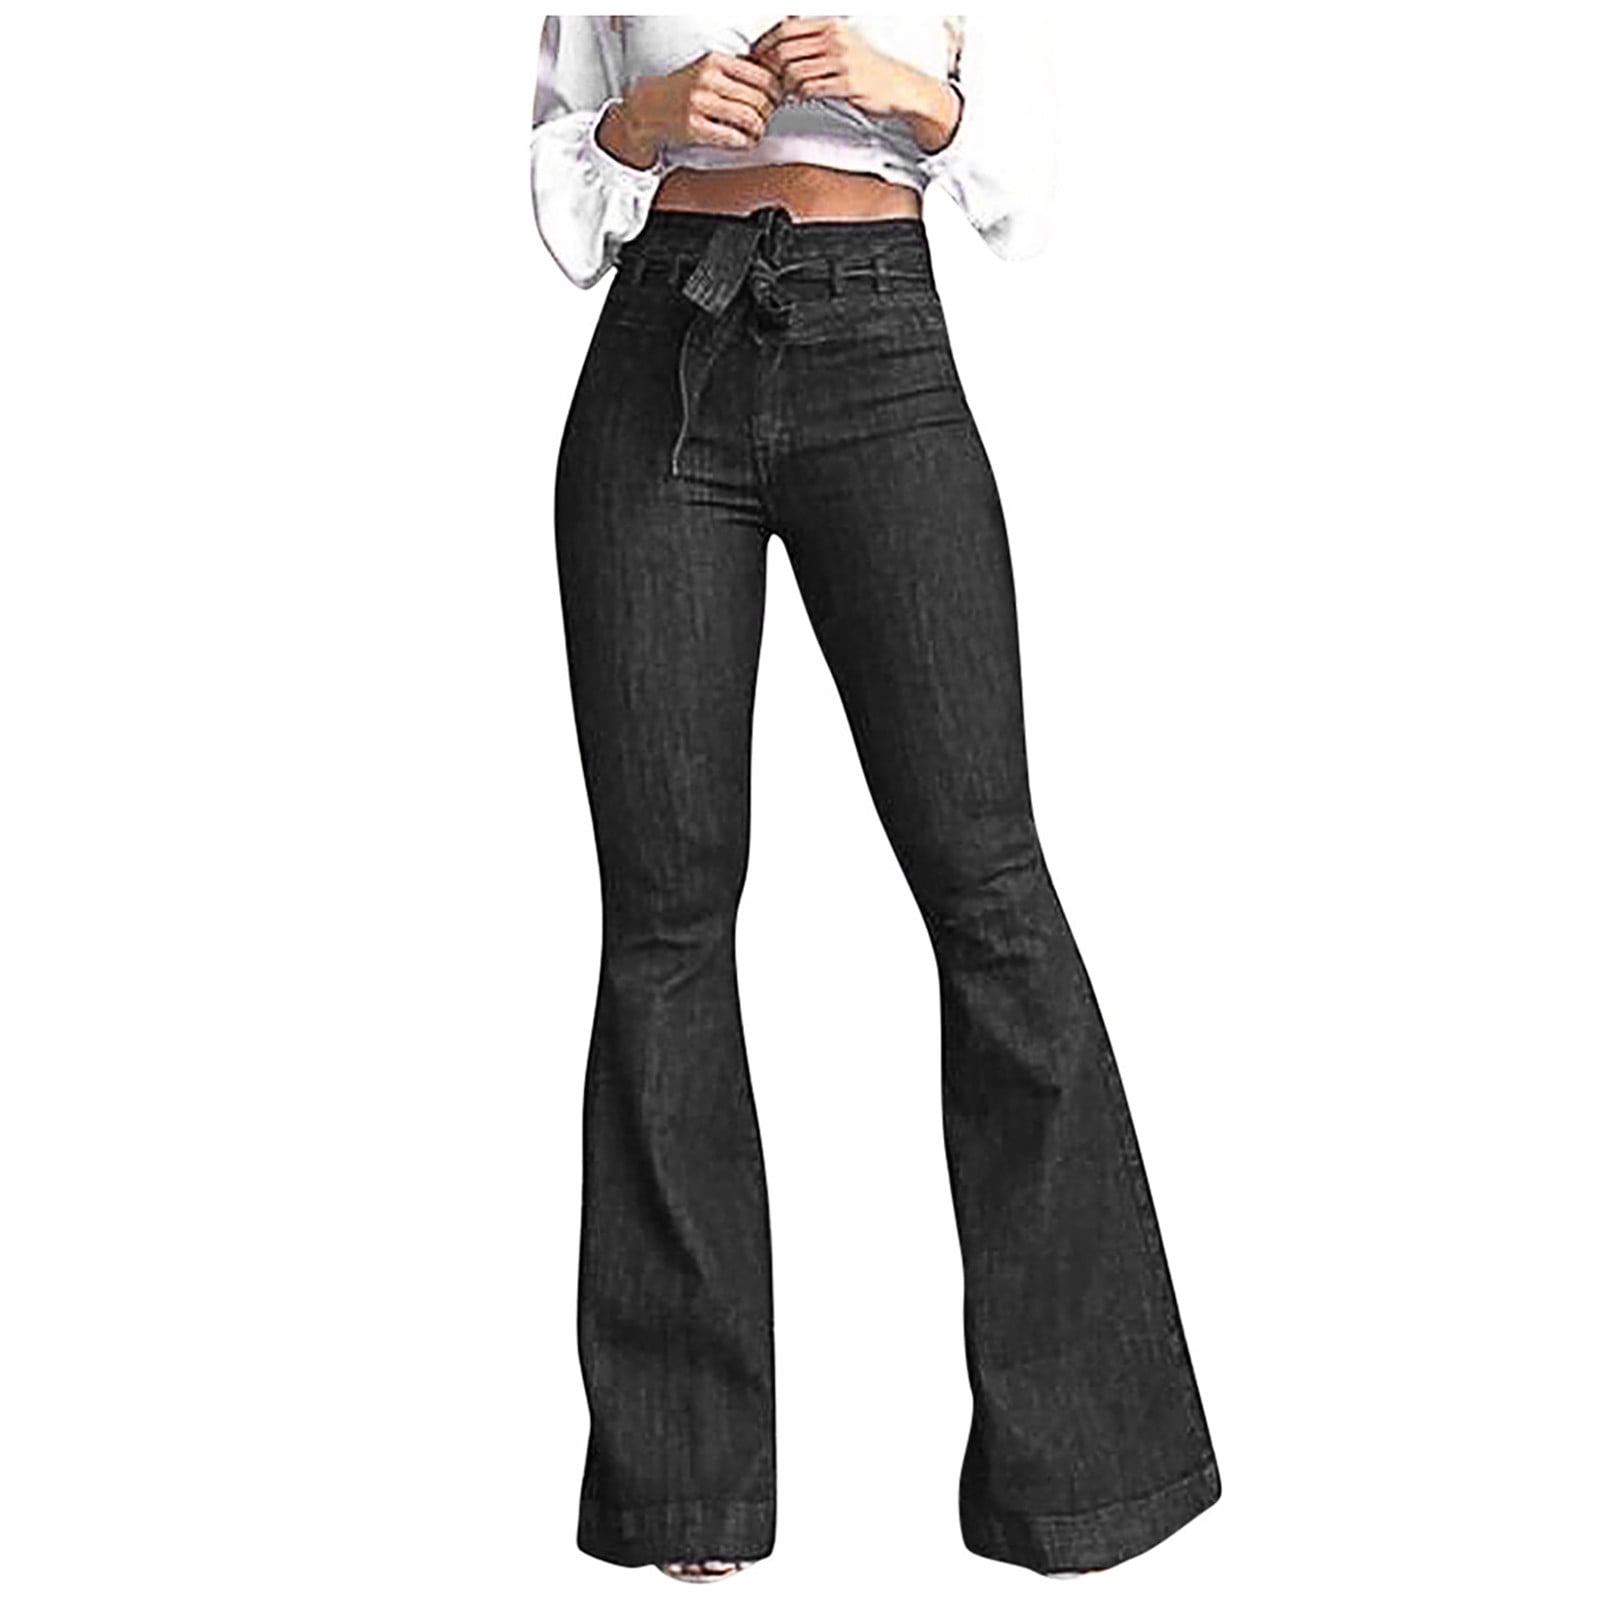 AherBiu Women Flare Jeans Belted High Waist Bell Bottom Denim Pants ...